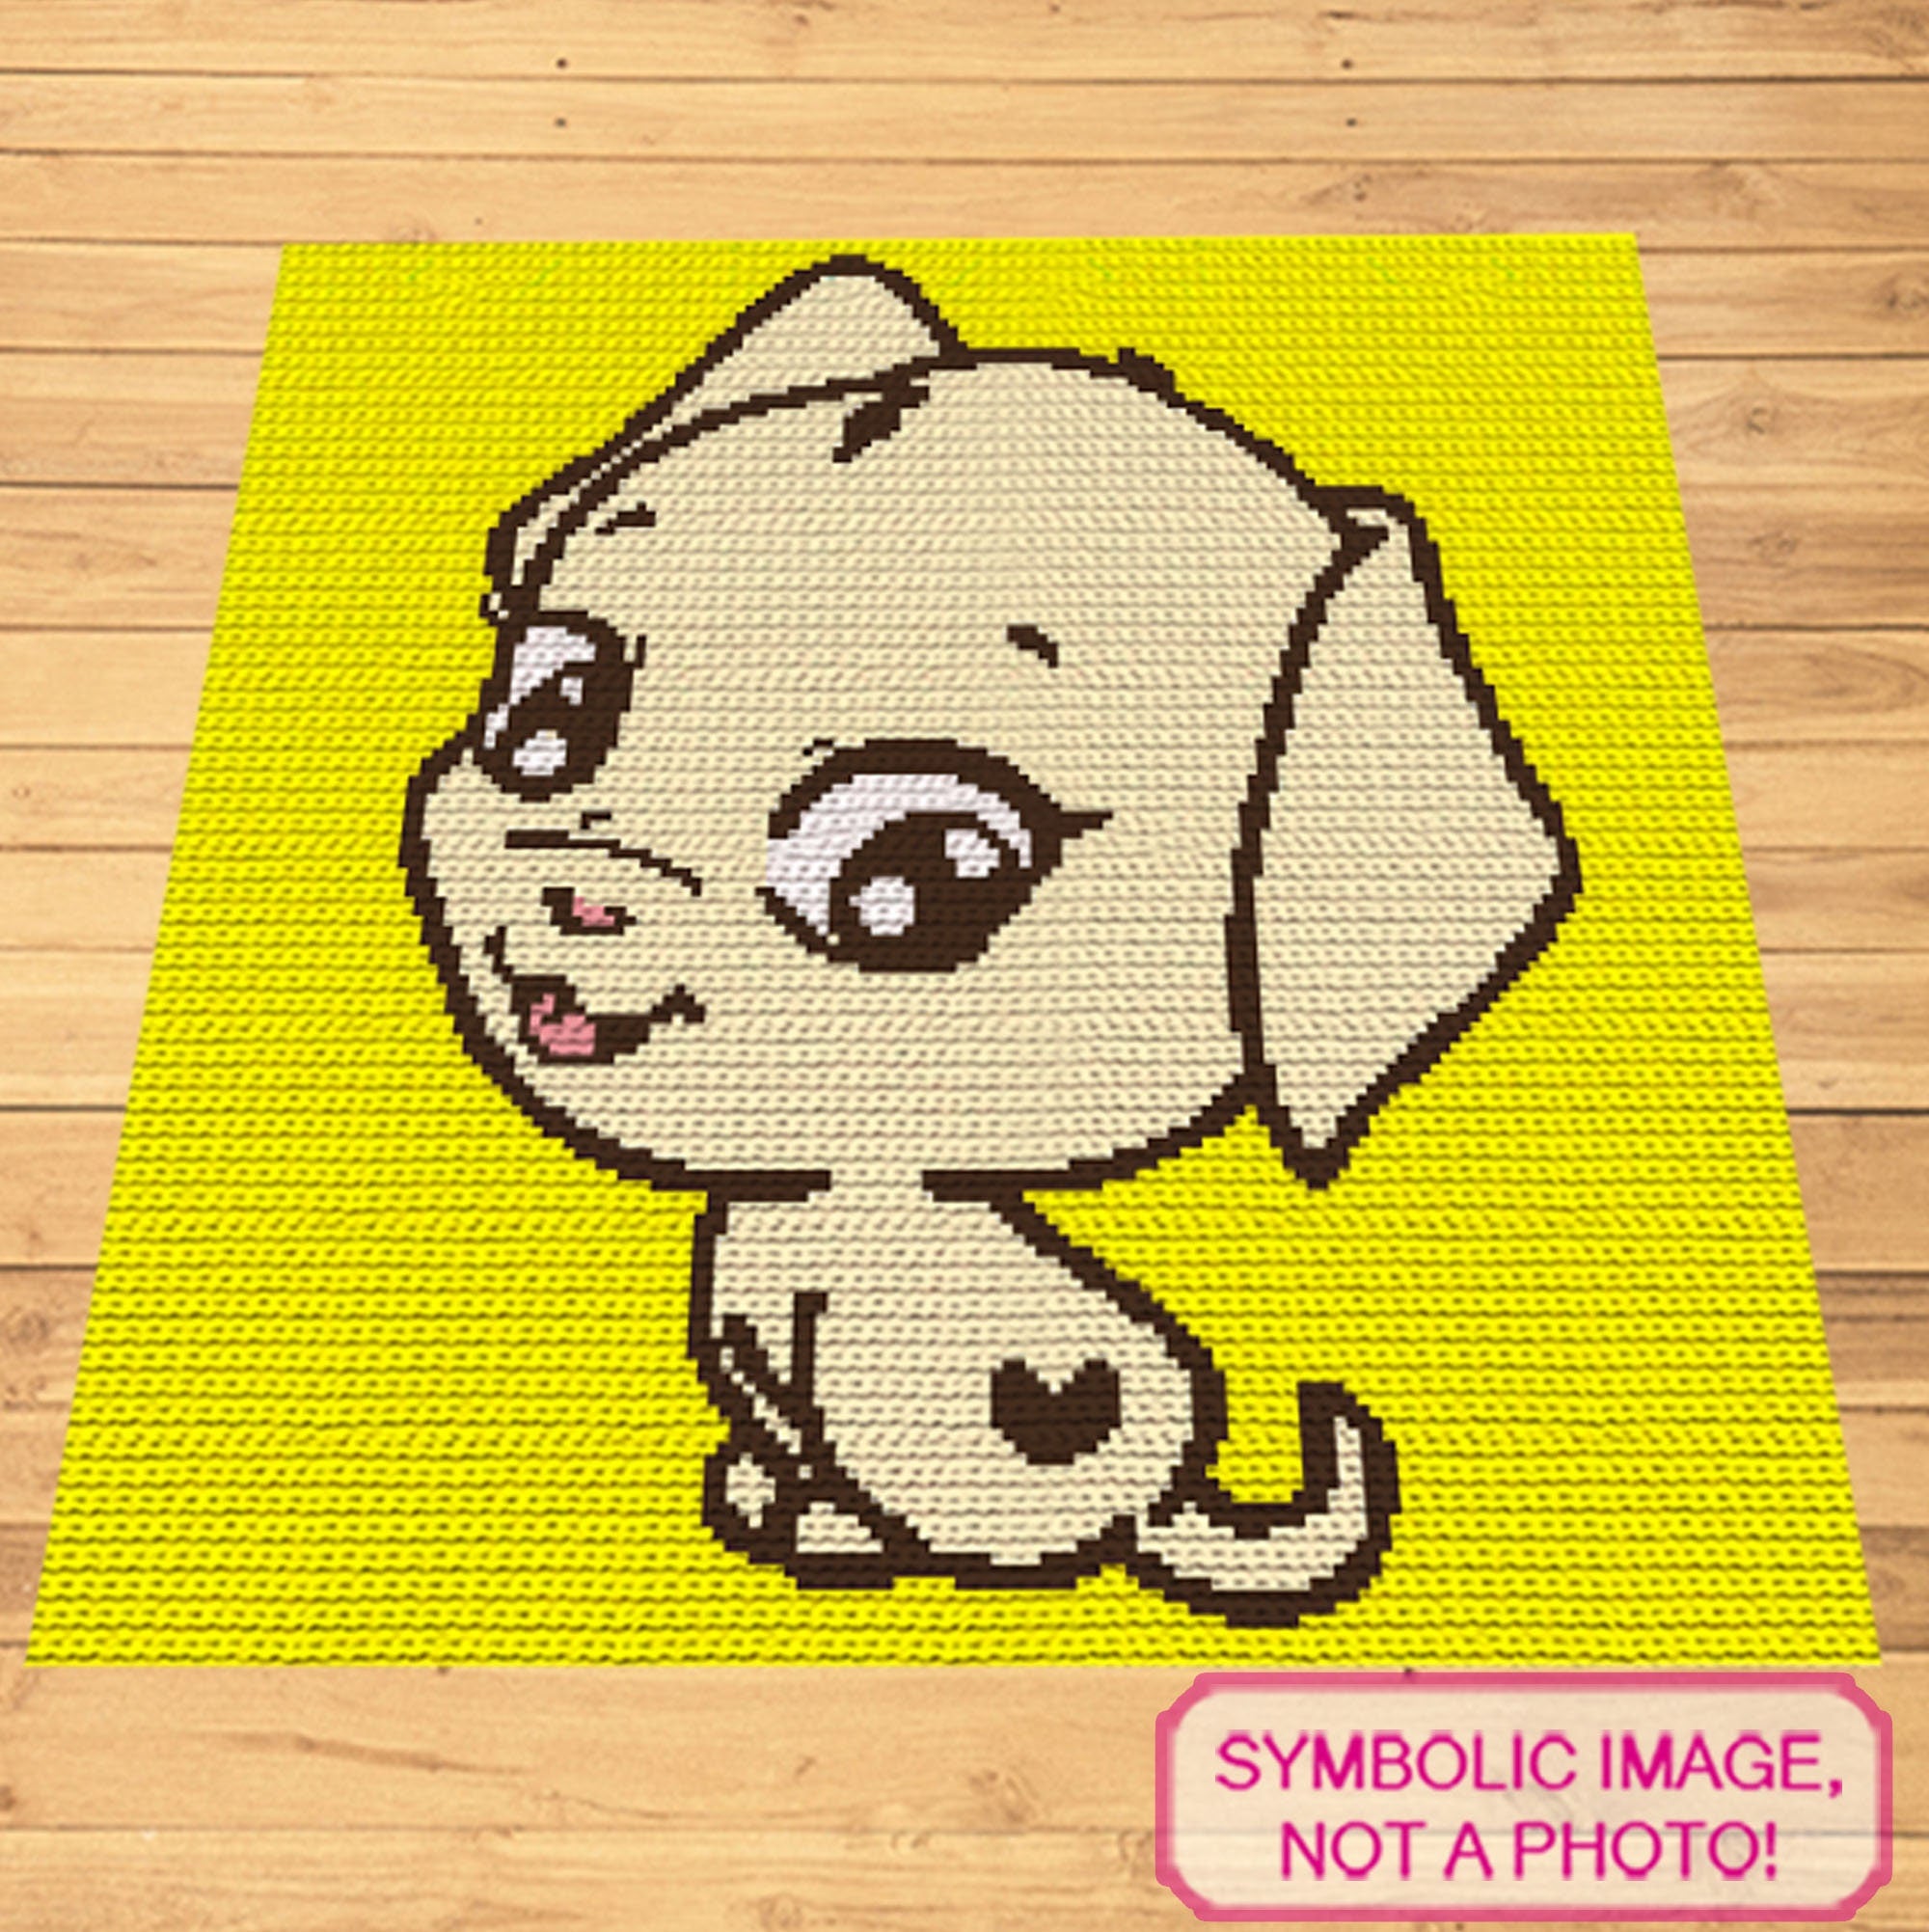 Cute Dog with Heart Crochet Blanket Pattern, Crochet Dog Pattern